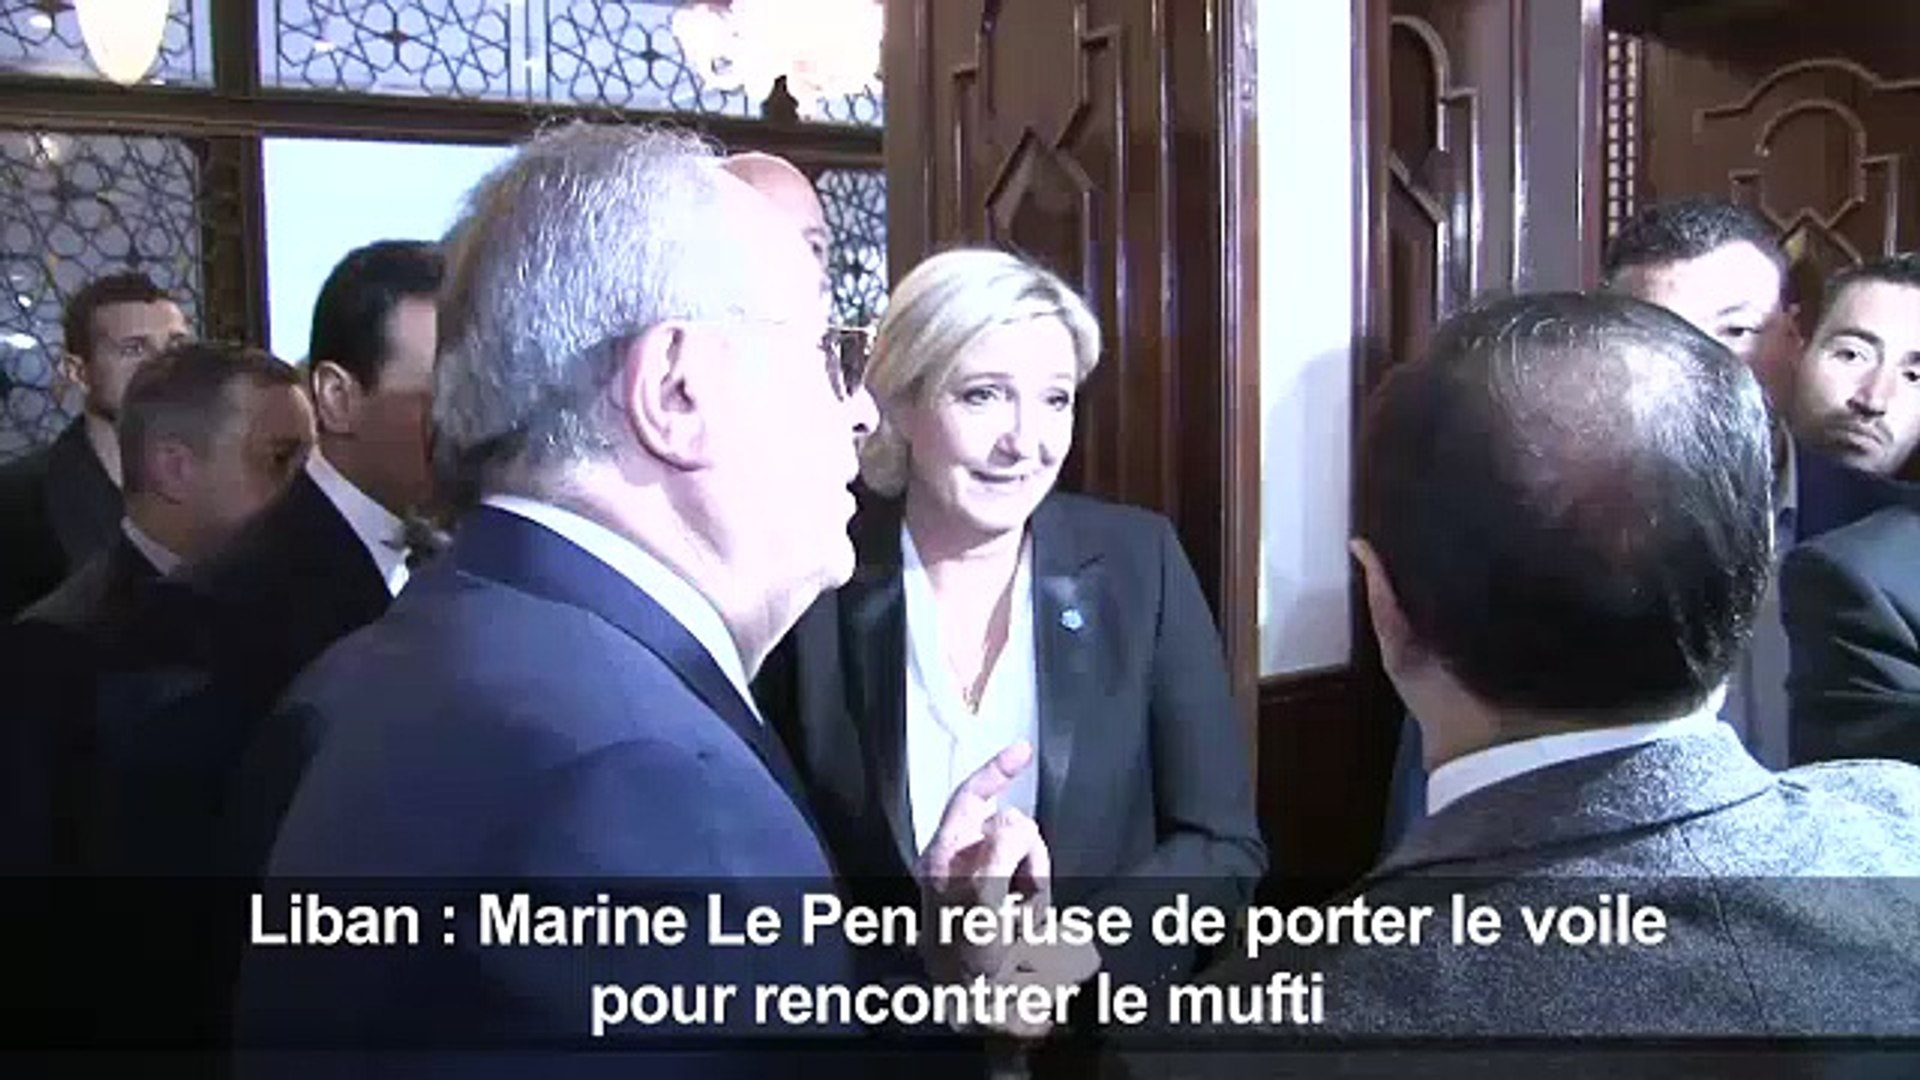 Liban: Le Pen refuse de porter le voile pour rencontrer le mufti - Vidéo  Dailymotion